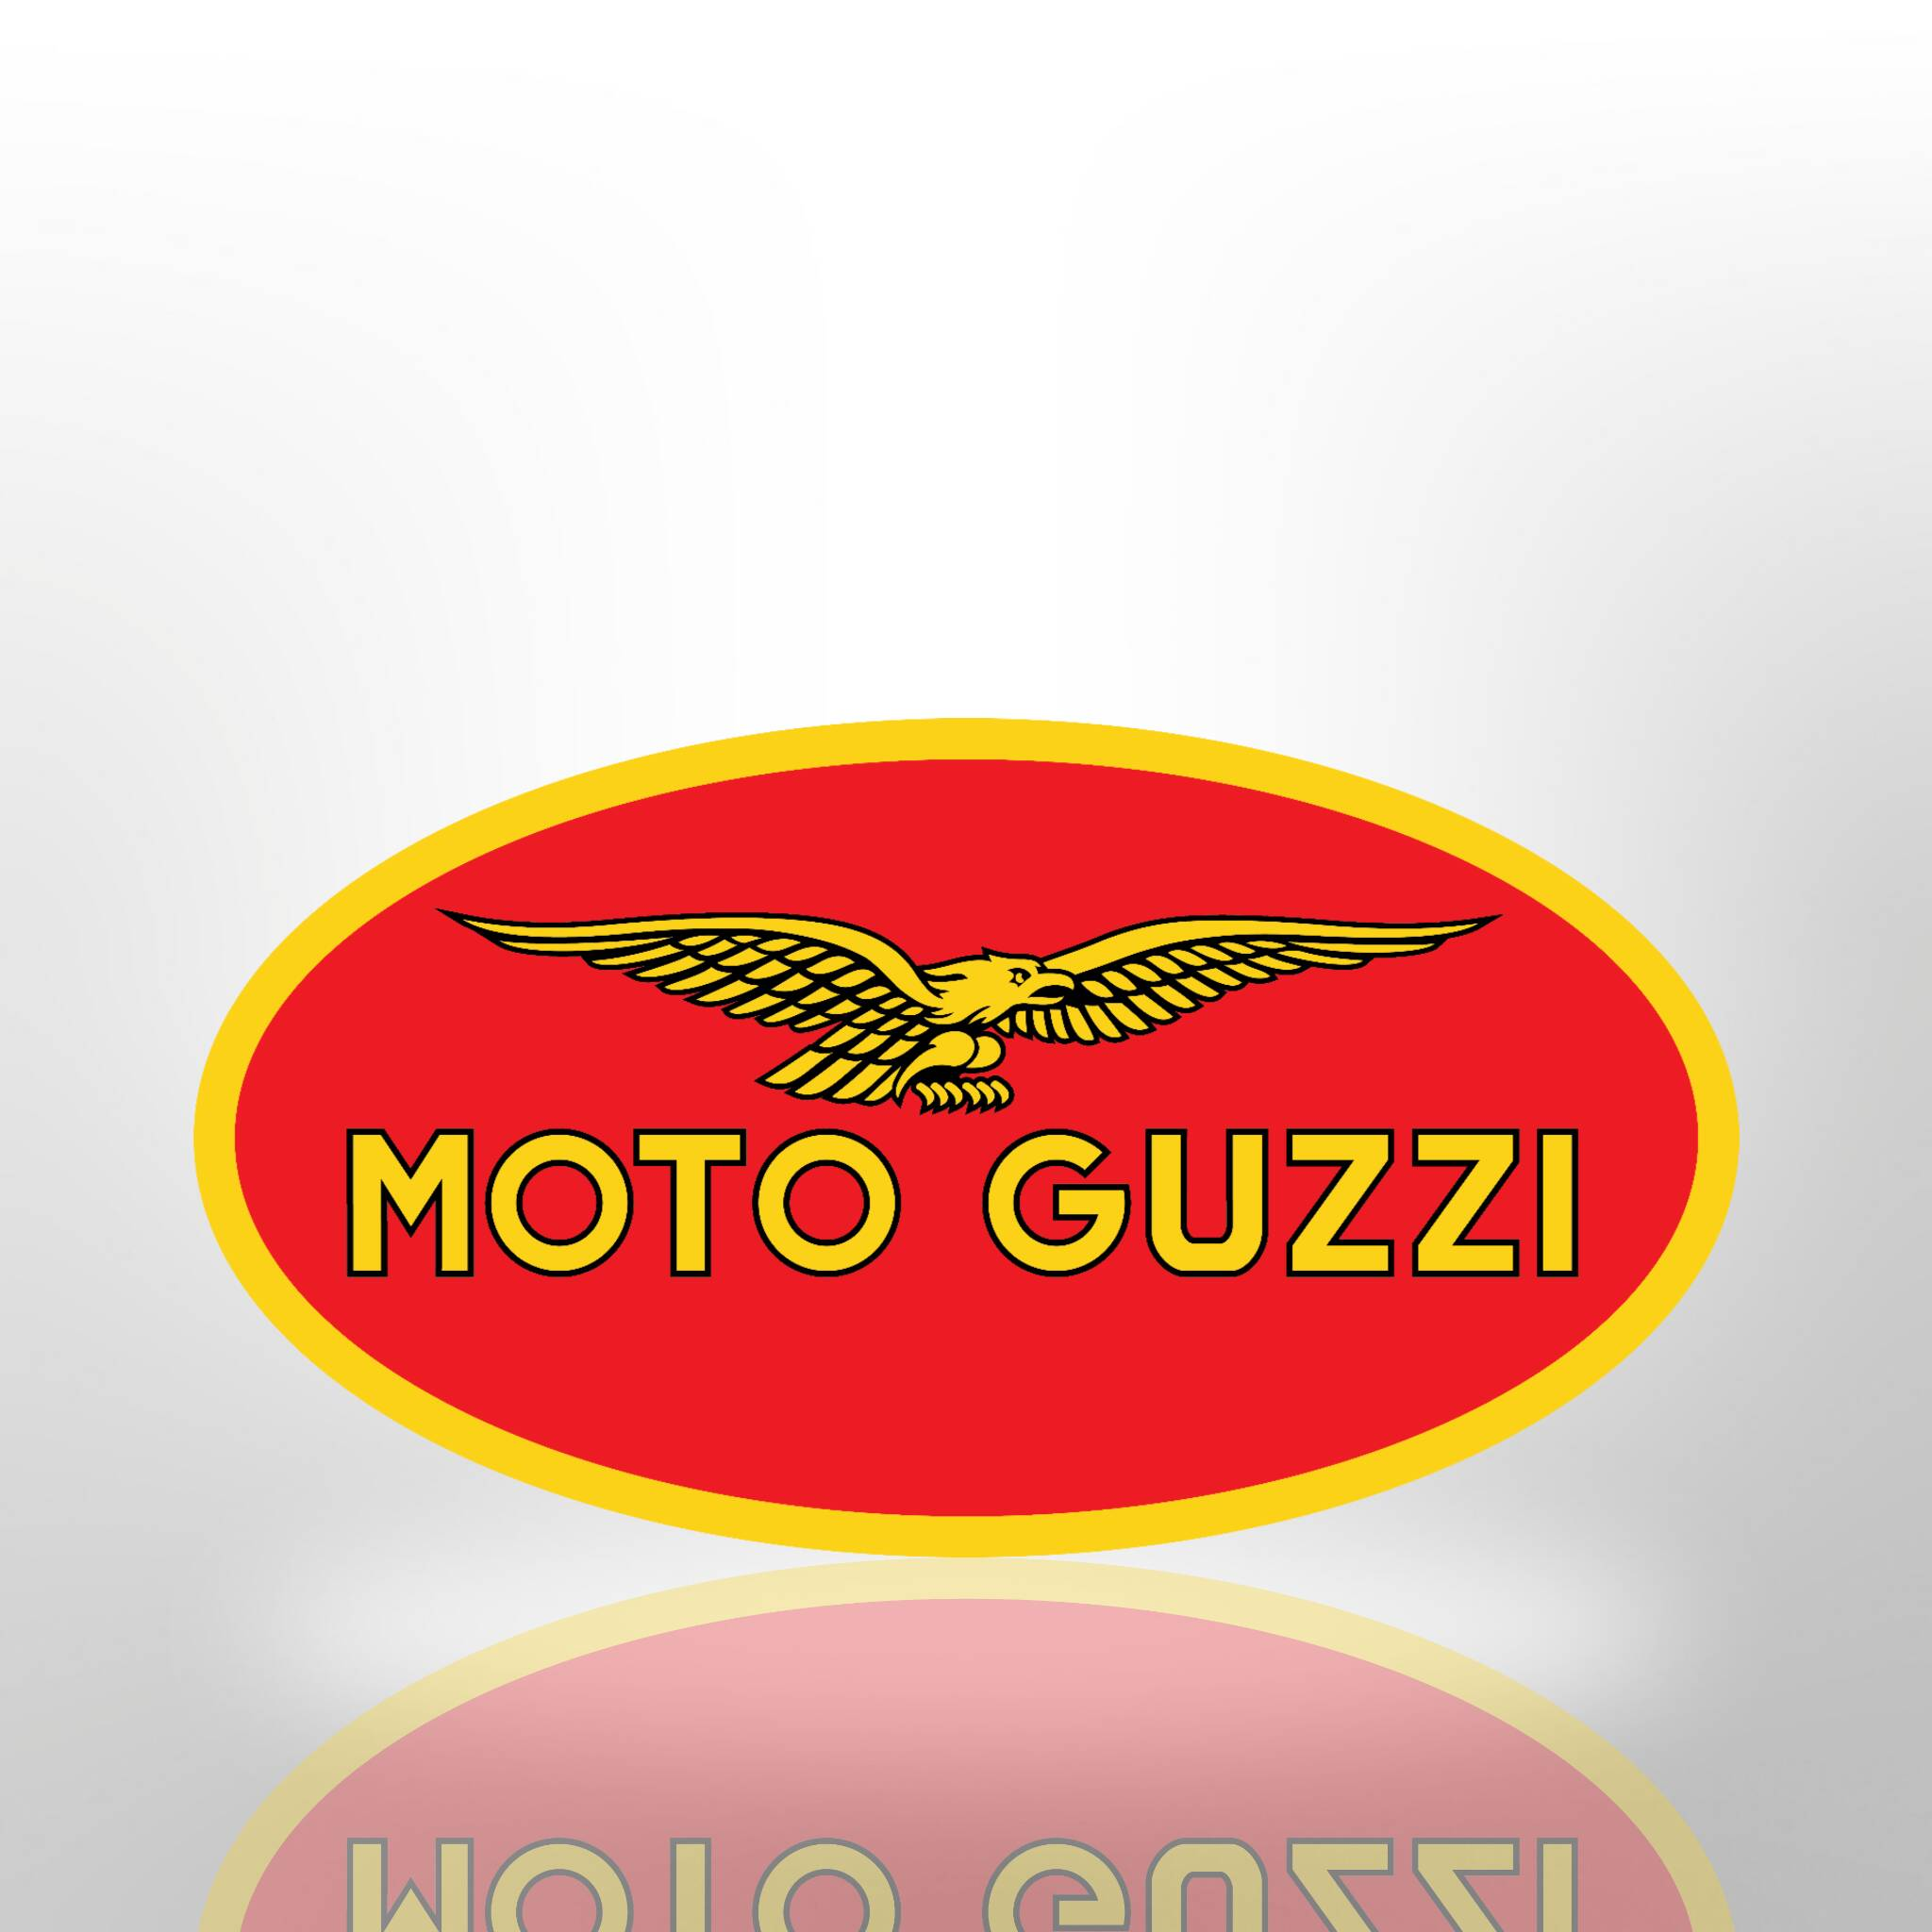 brand logo moto guzzi